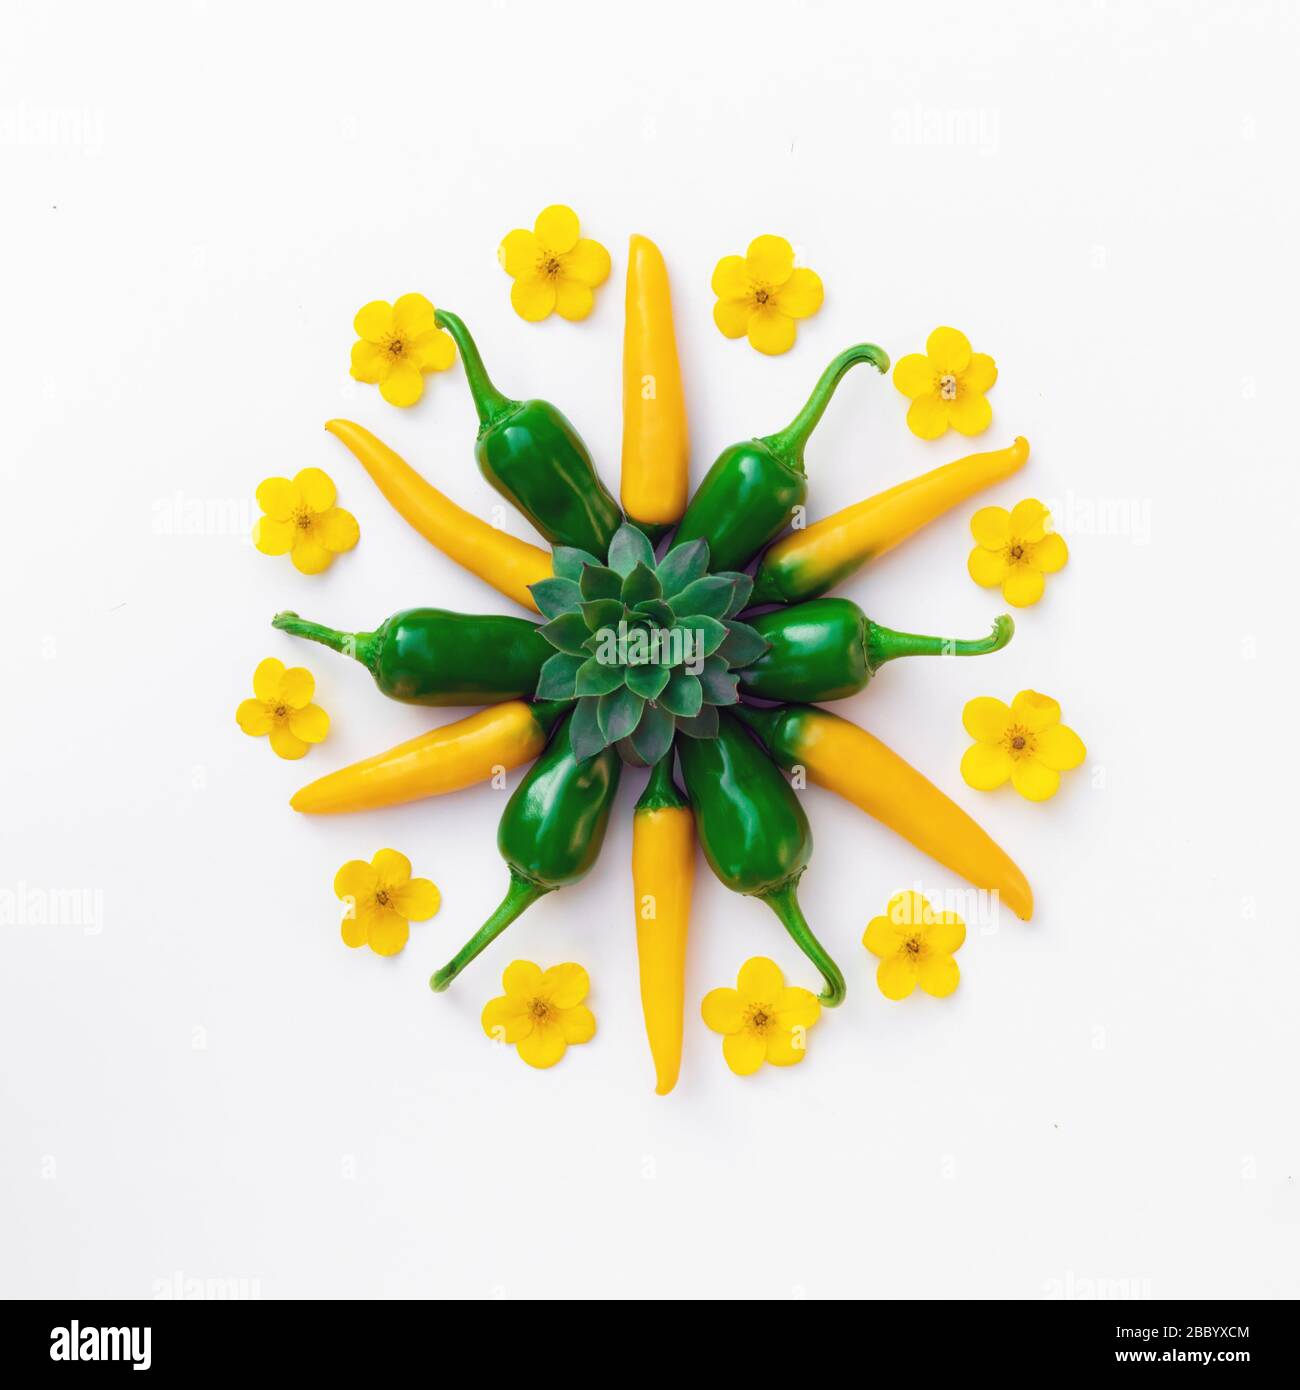 Poivrons chauds jaunes et verts avec compositions de fleurs. Photographie alimentaire Banque D'Images